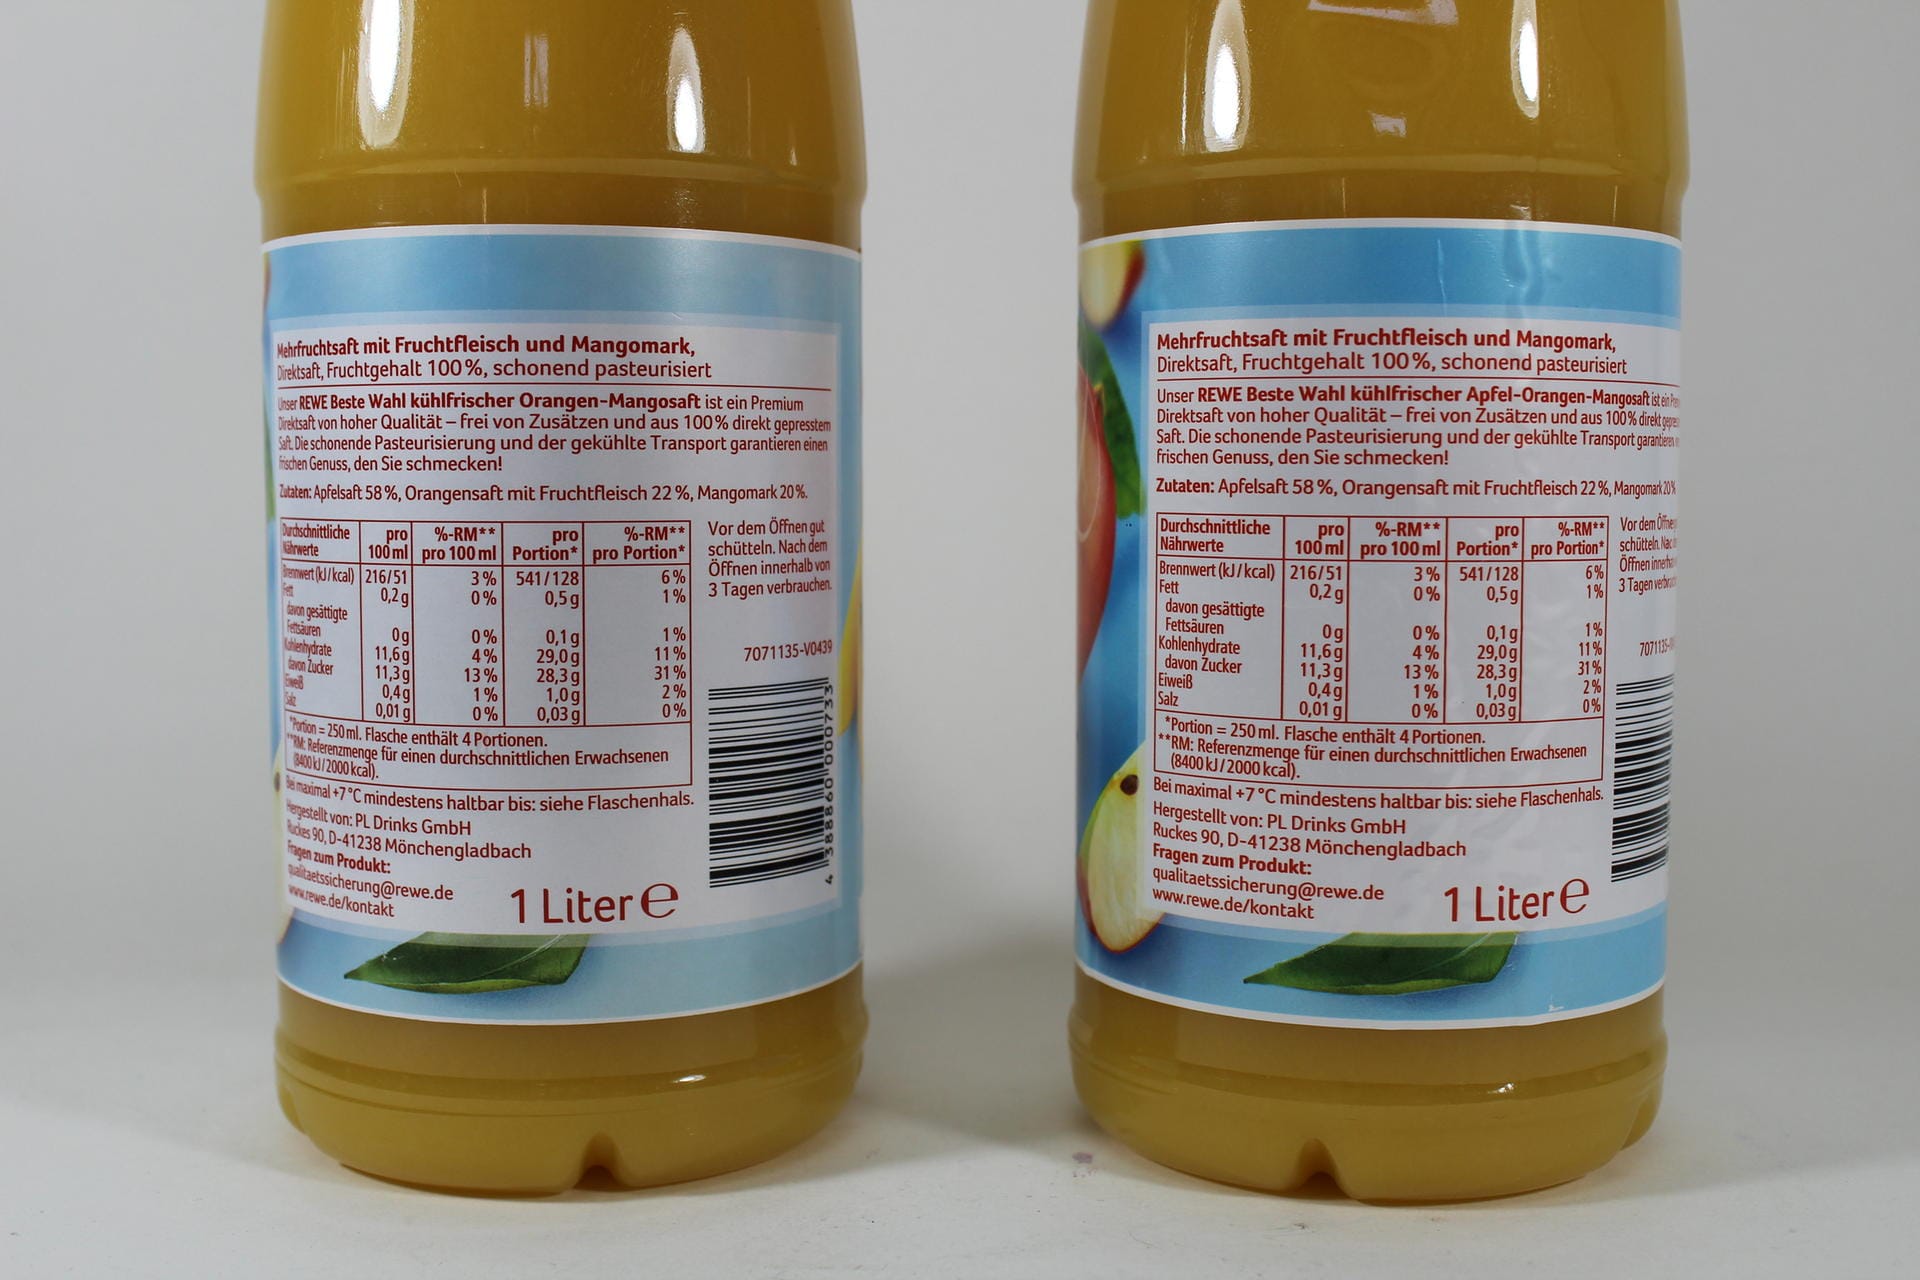 Inhaltsstoffe des Fruchtsaftes: Tatsächlich enthält der Saft aber auch Apfel. Die neue Produktbezeichnung weist auf diesen Umstand hin.